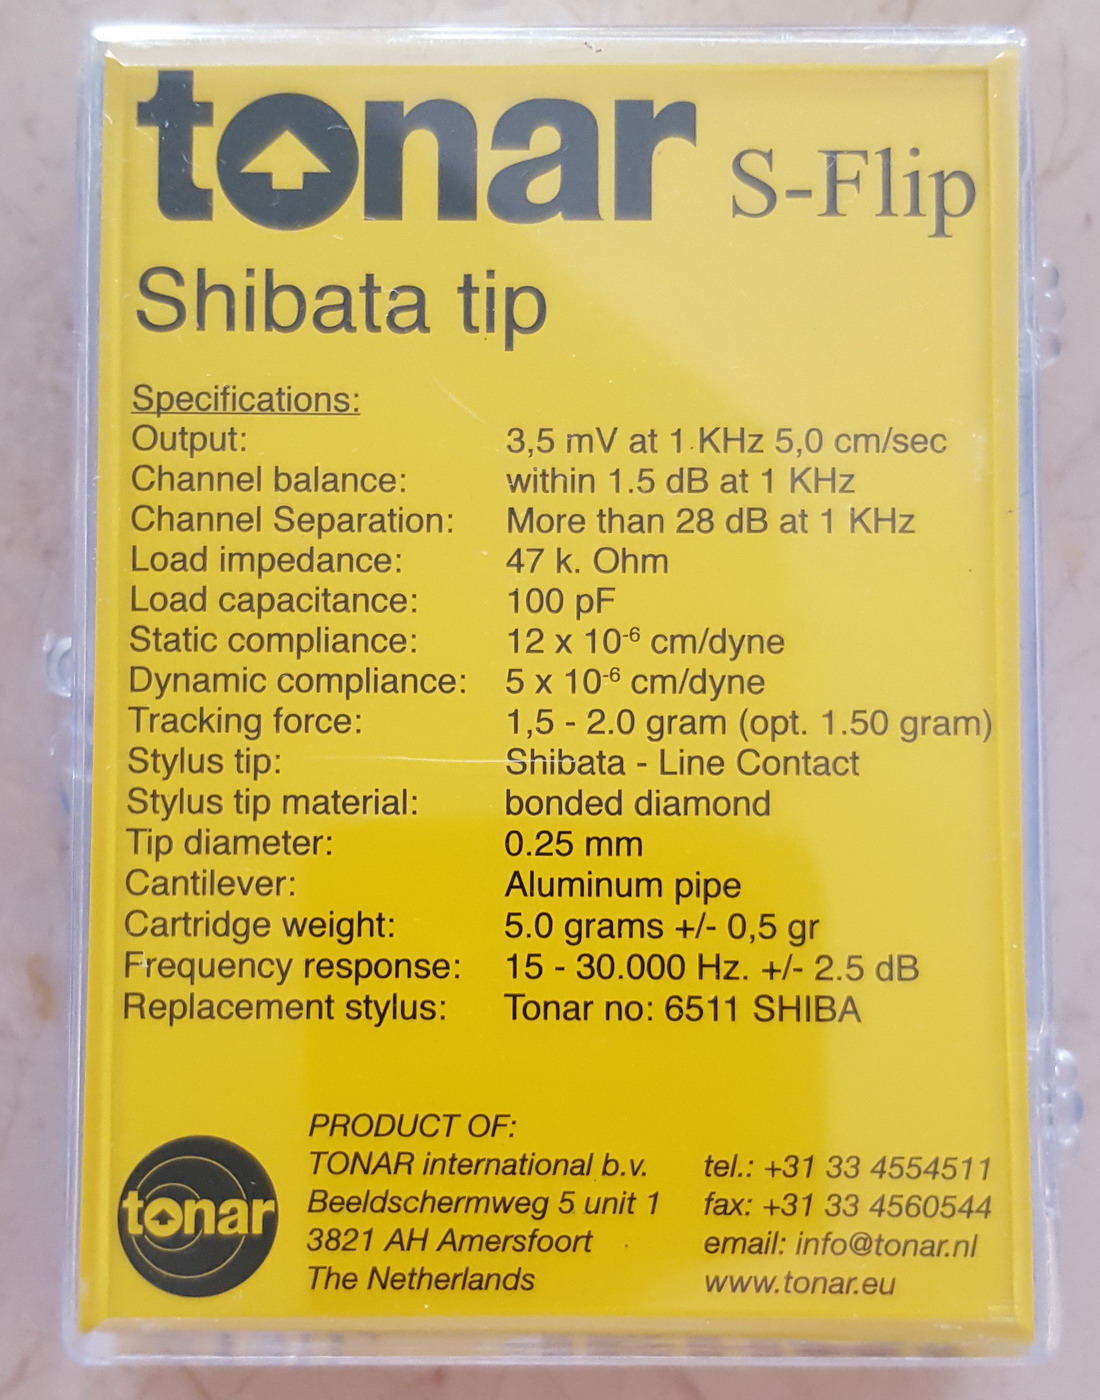   2      i,  : TONAR S-Flip (Shibata tip), art. 9586